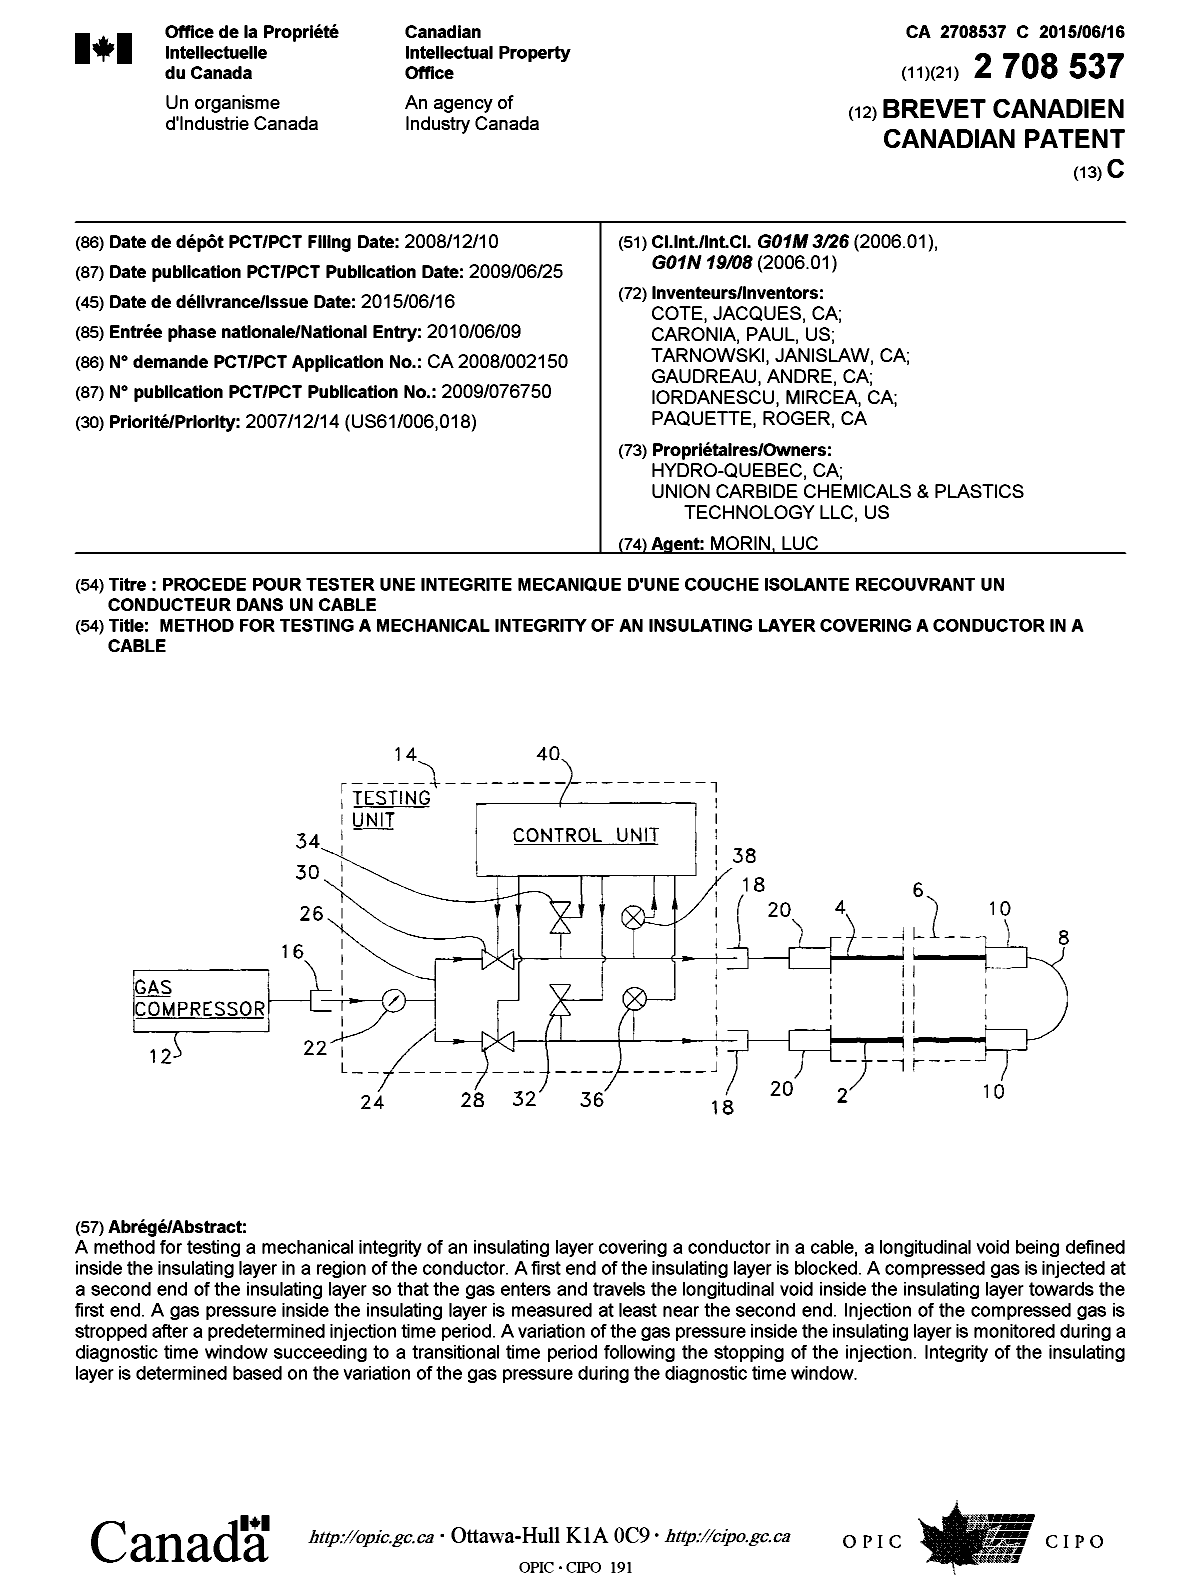 Document de brevet canadien 2708537. Page couverture 20141221. Image 1 de 1